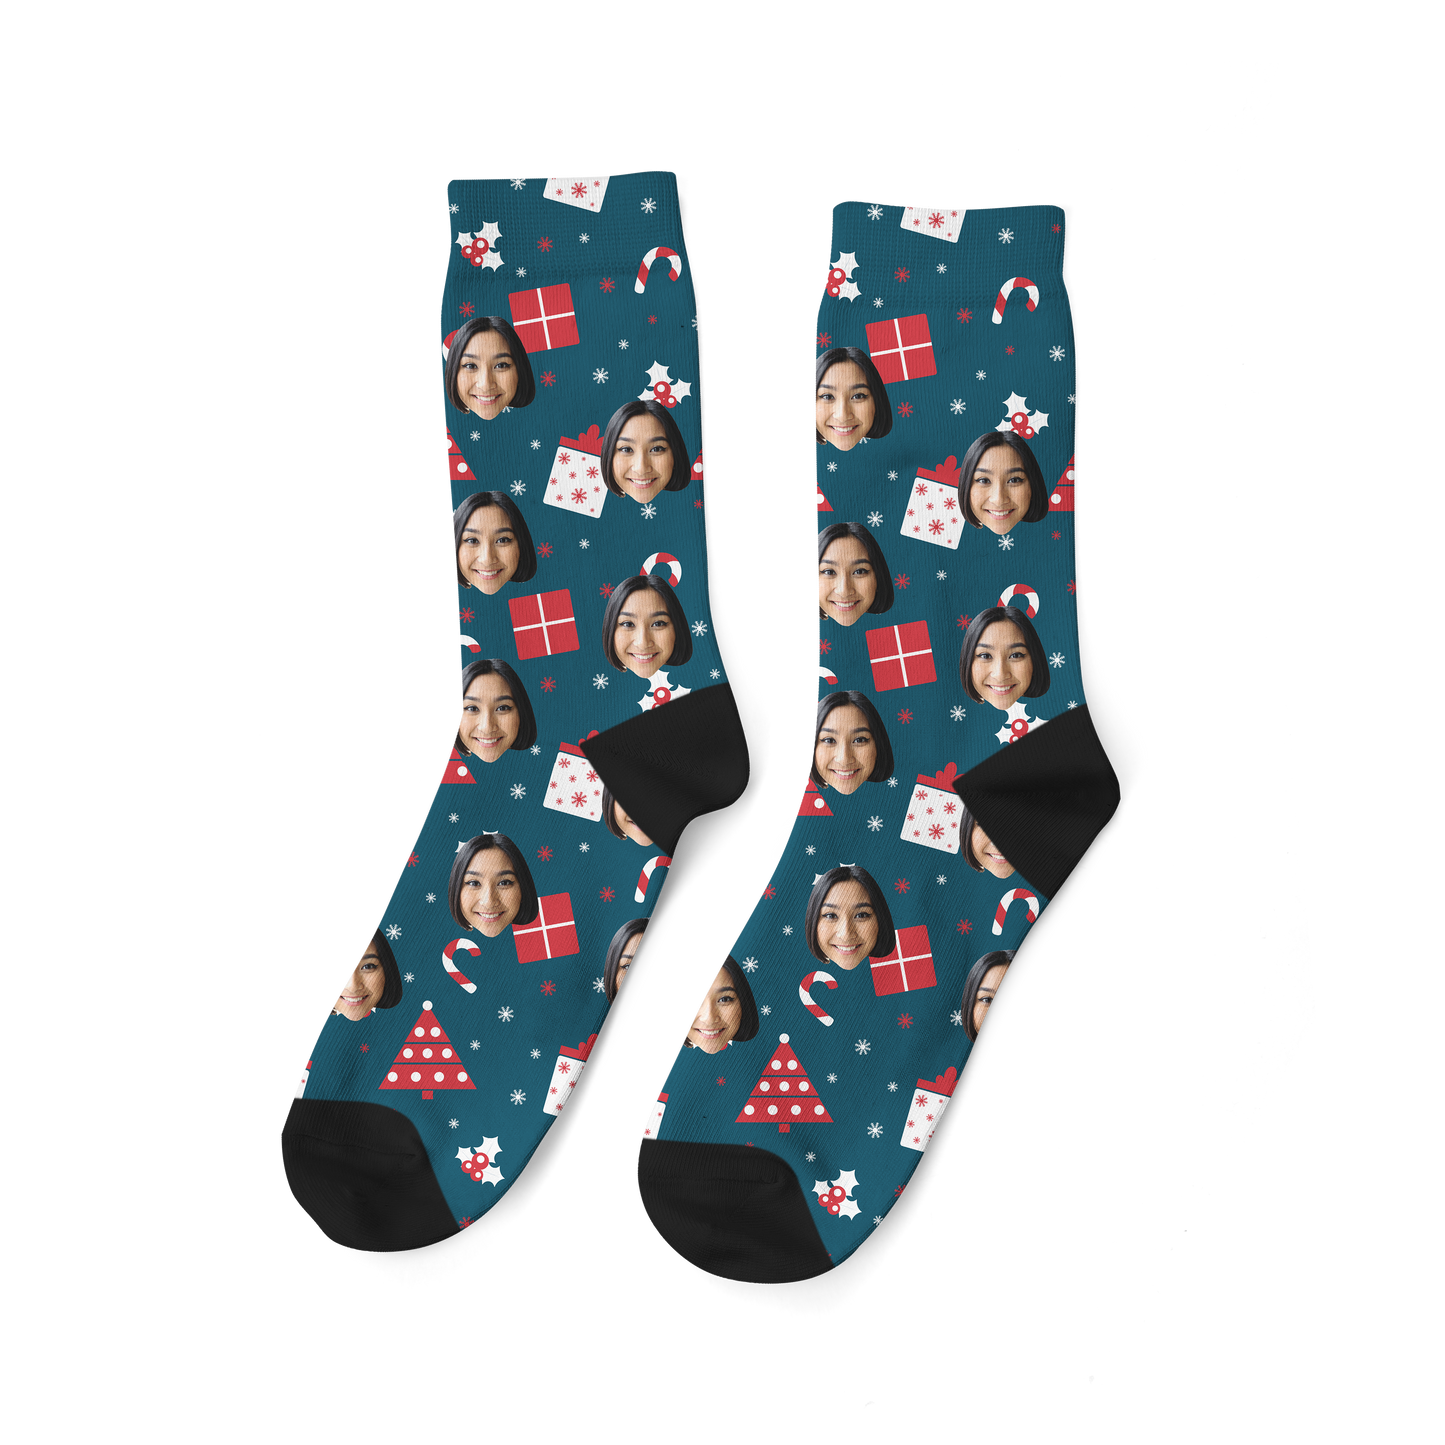 聖誕禮物#8客製化襪